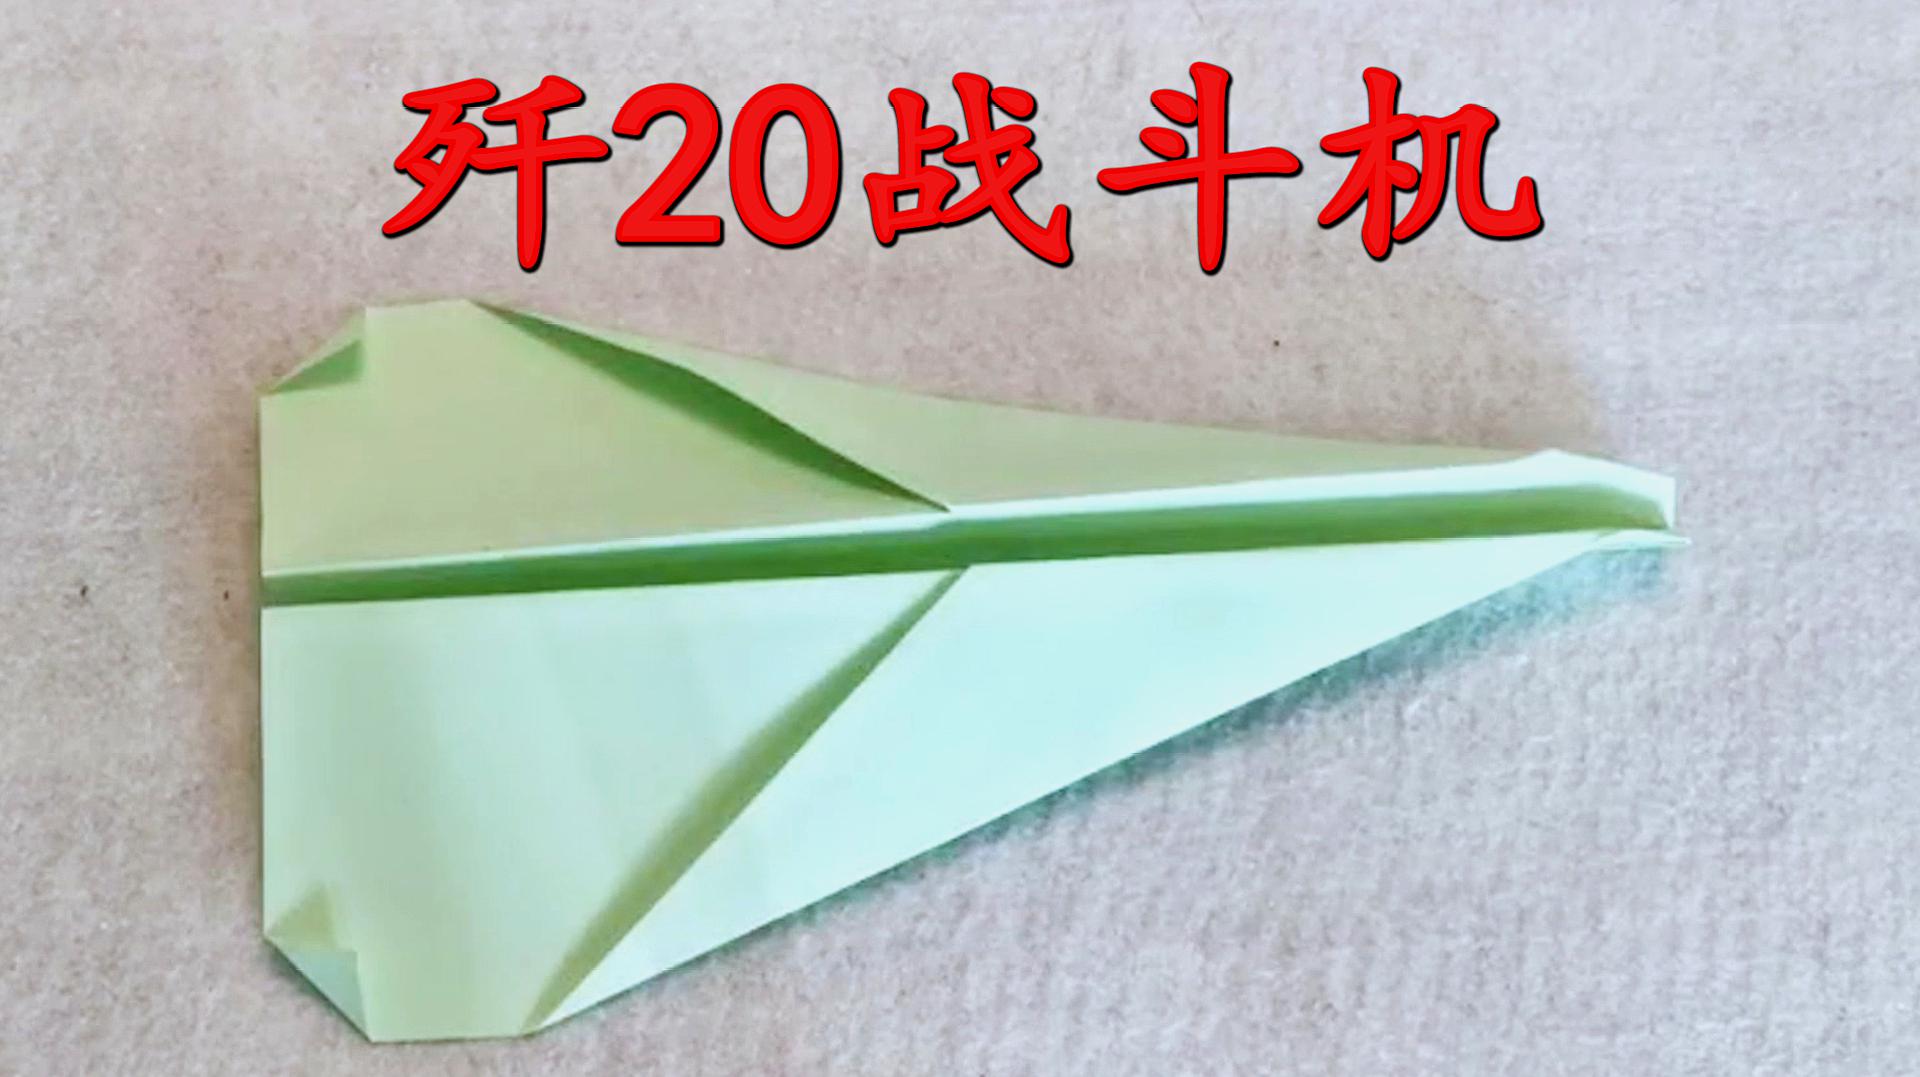 6歼20战斗机纸飞机:一张a4纸,对齐对折展开,两边翻转对齐,同理继续